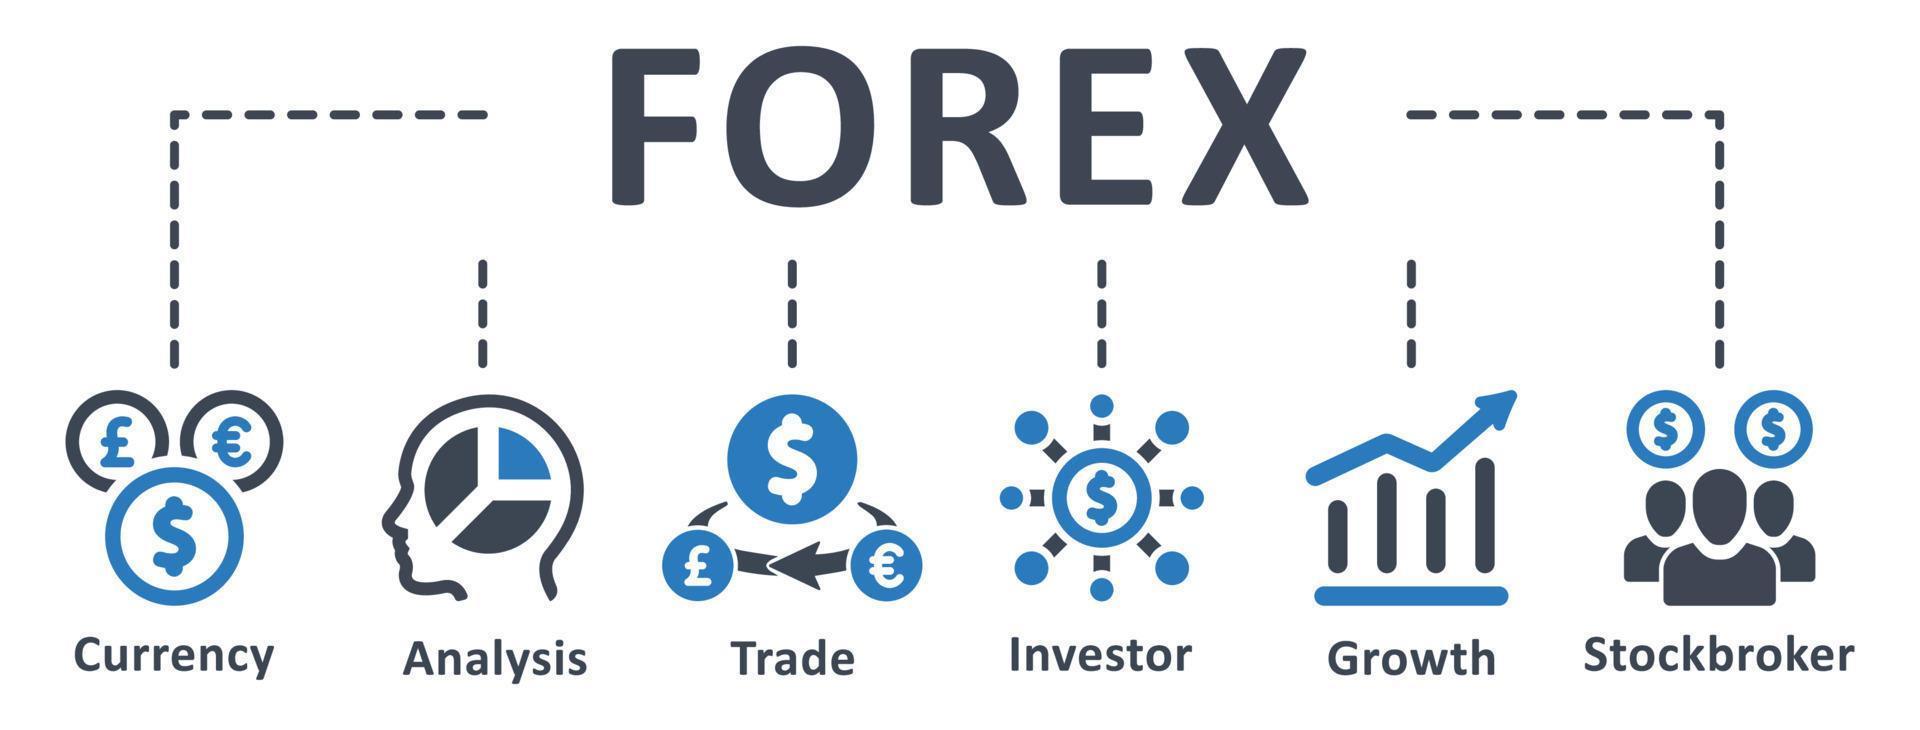 forex icoon - vector illustratie . forex, economie, handel, munteenheid, investeerder, groei, analyse, effectenmakelaar, infografisch, sjabloon, presentatie, concept, banier, pictogram, icoon set, pictogrammen .